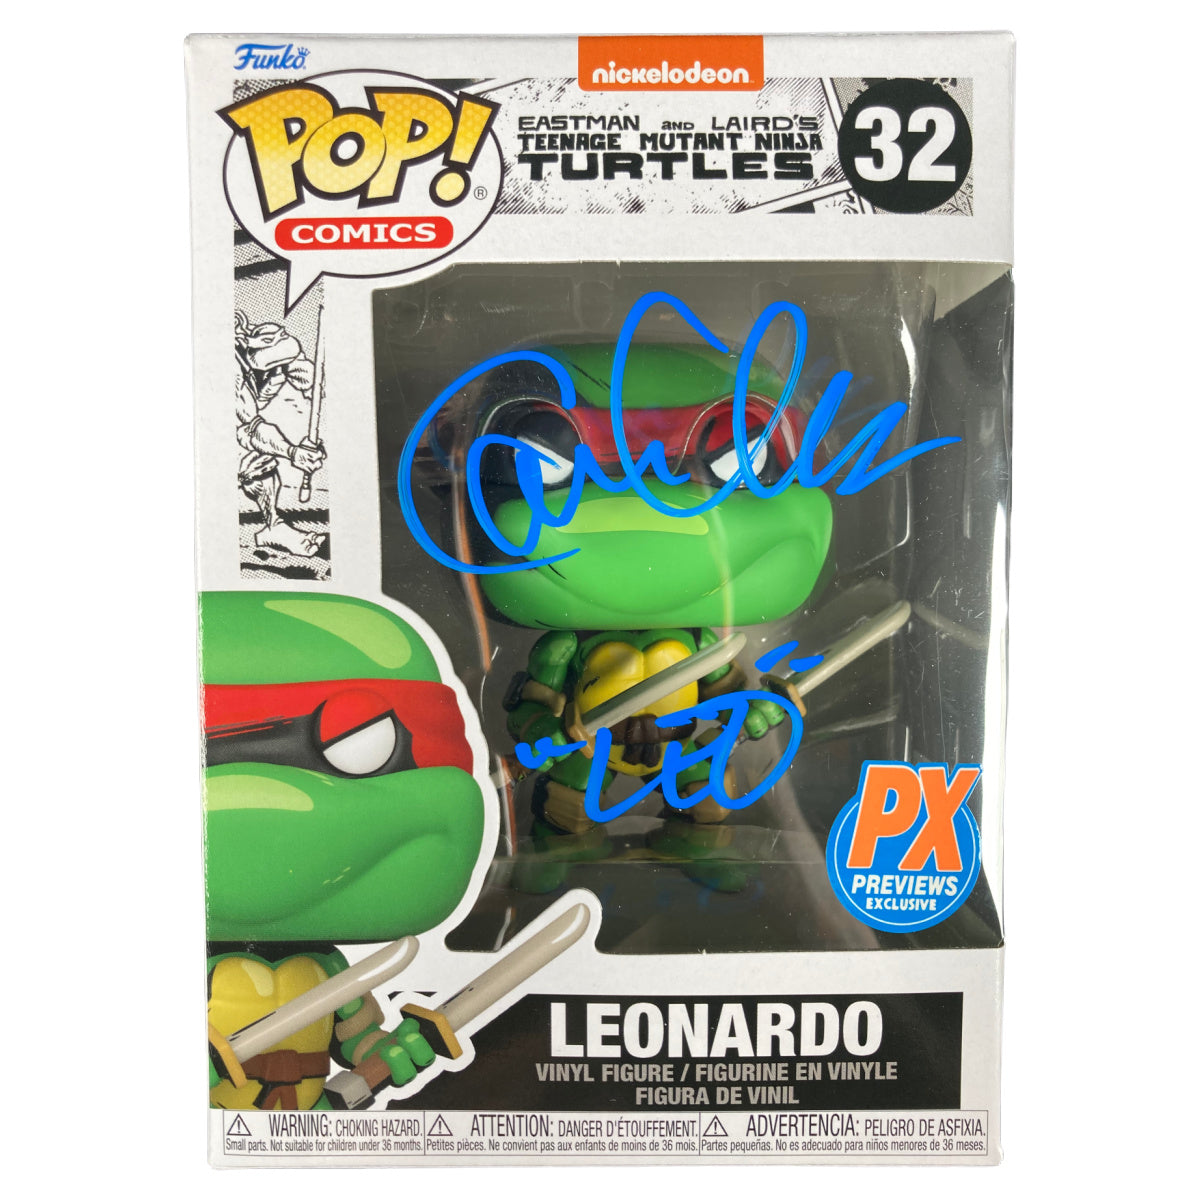 CAM CLARKE SIGNED Funko POP TMNT Ninja Turtles #32 Leonardo Autographed JSA COA